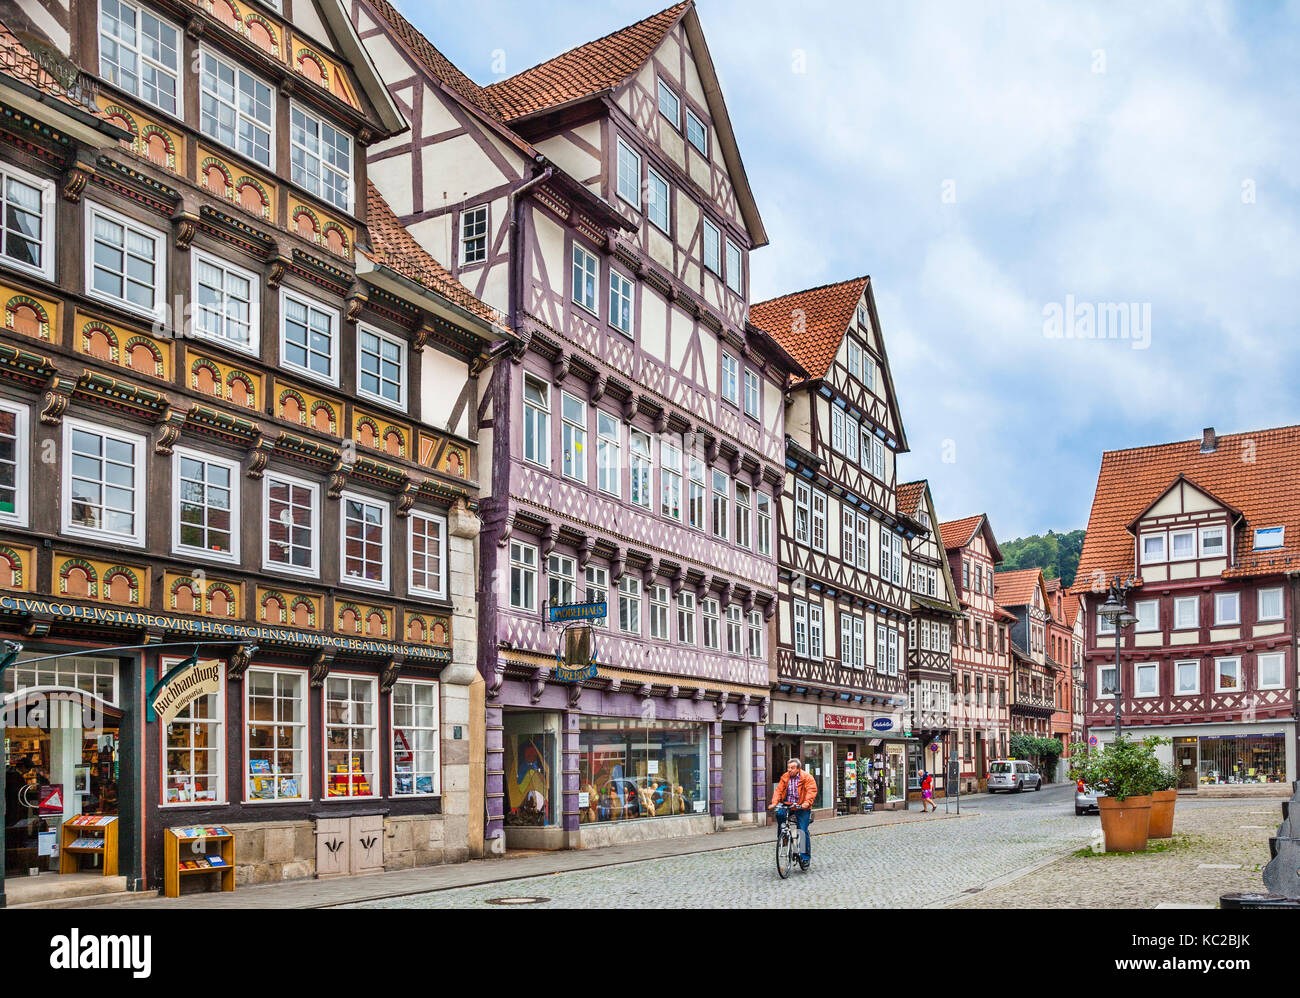 Allemagne, Basse-Saxe, Hann. Münden, cité médiévale avec des maisons à colombages sur la place du marché Banque D'Images